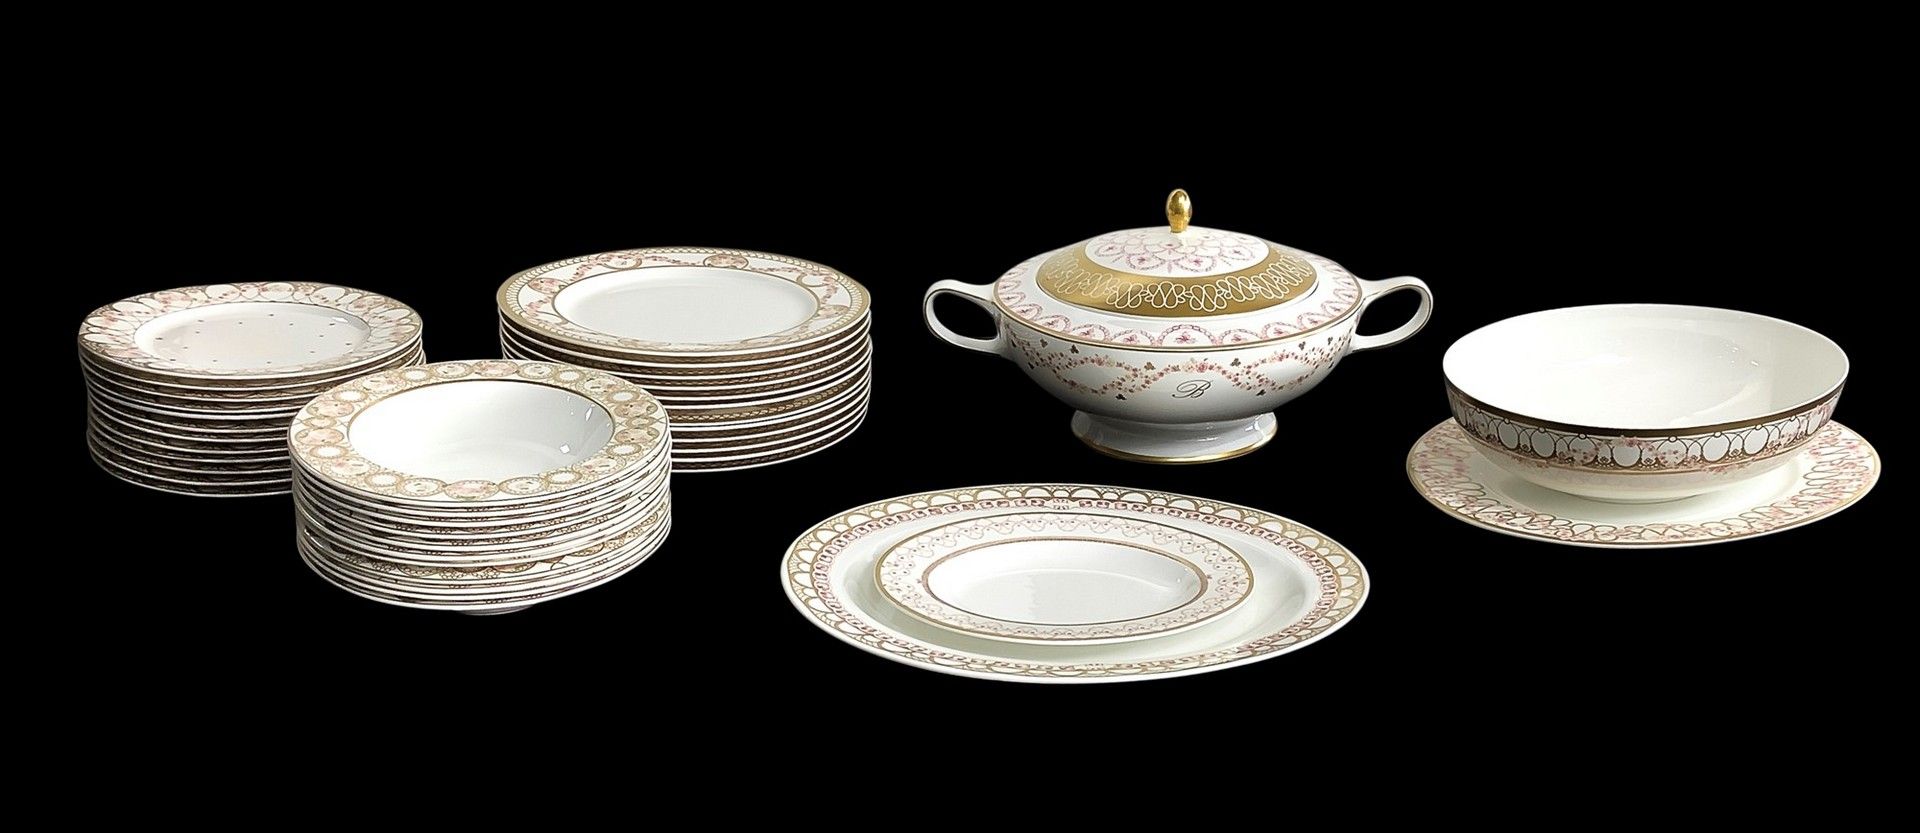 Blumarine Blumarine - 瓷器12人晚餐服务 白色瓷器 
服务包括：12个餐盘，12个果盘，12个汤盘，1个大椭圆盘，1个汤壶，1个沙拉碗，1&hellip;